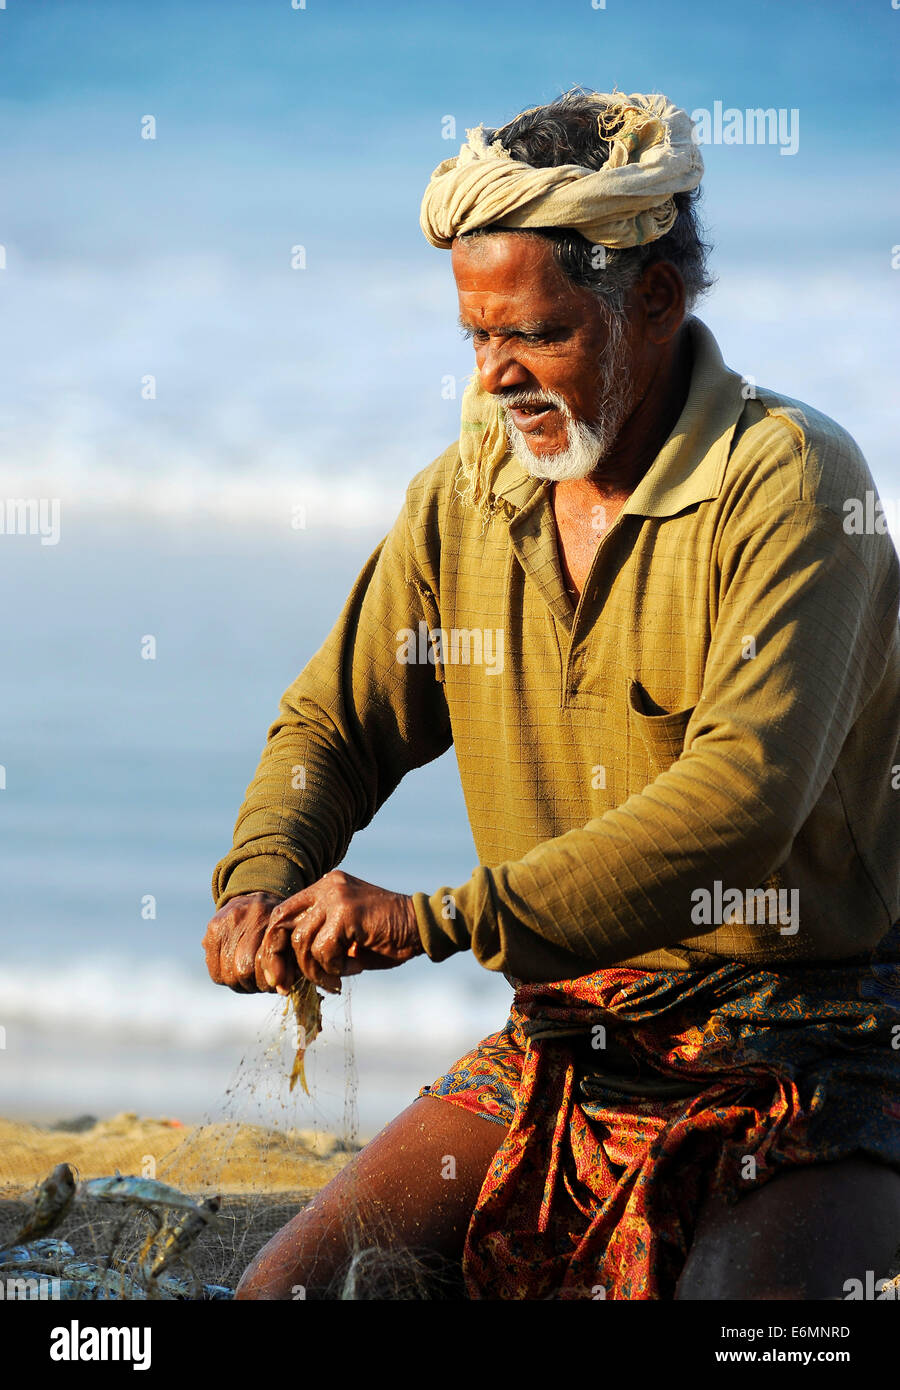 Fischer, kleine Fische aus dem Netz nehmen, am Strand, Arabisches Meer, Varkala, Kerala, Südindien, Indien Stockfoto